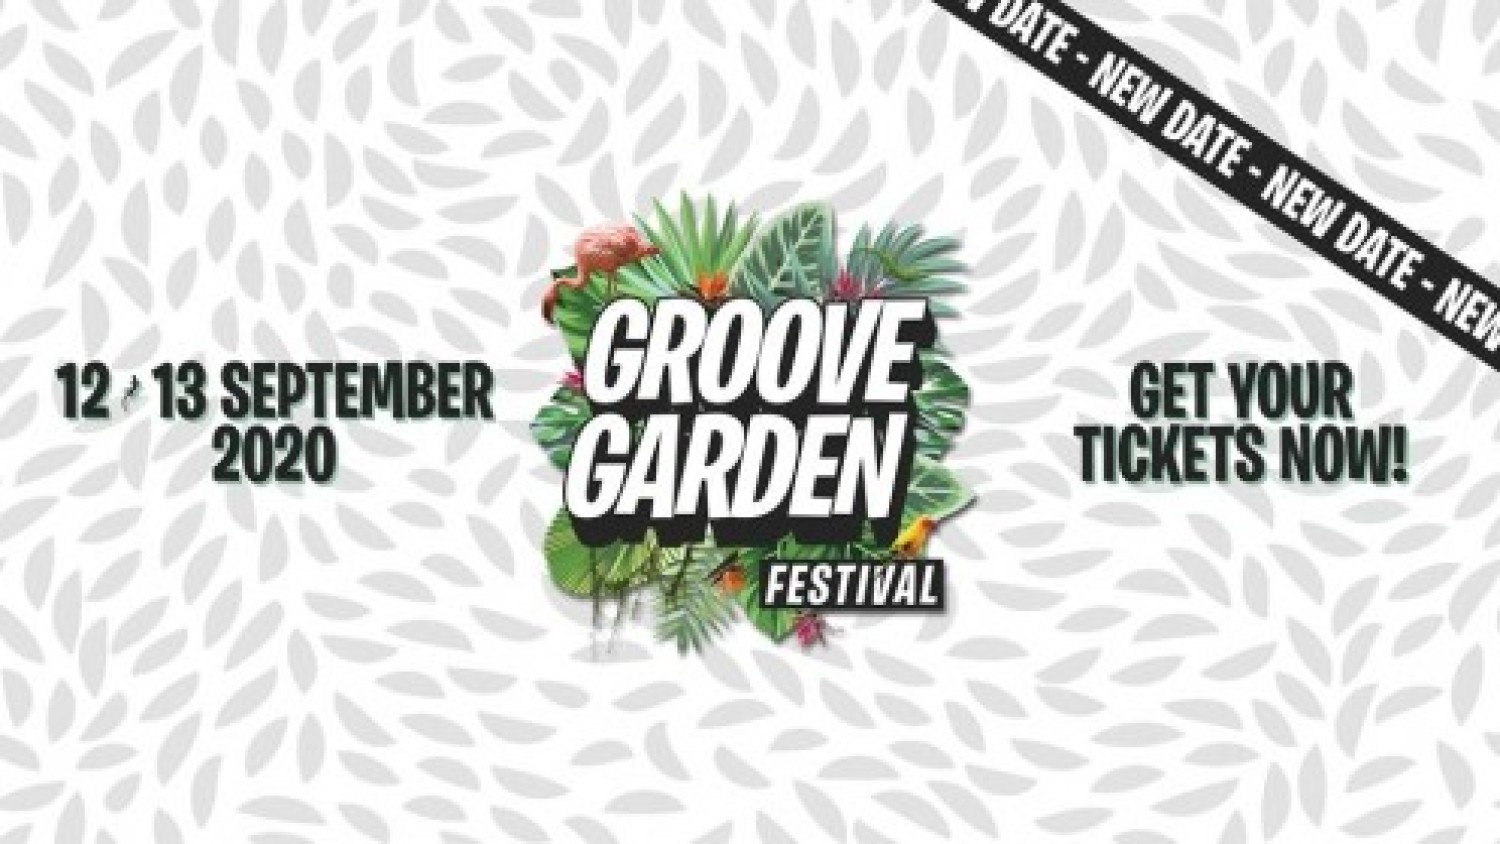 Groove Garden Festival 2020